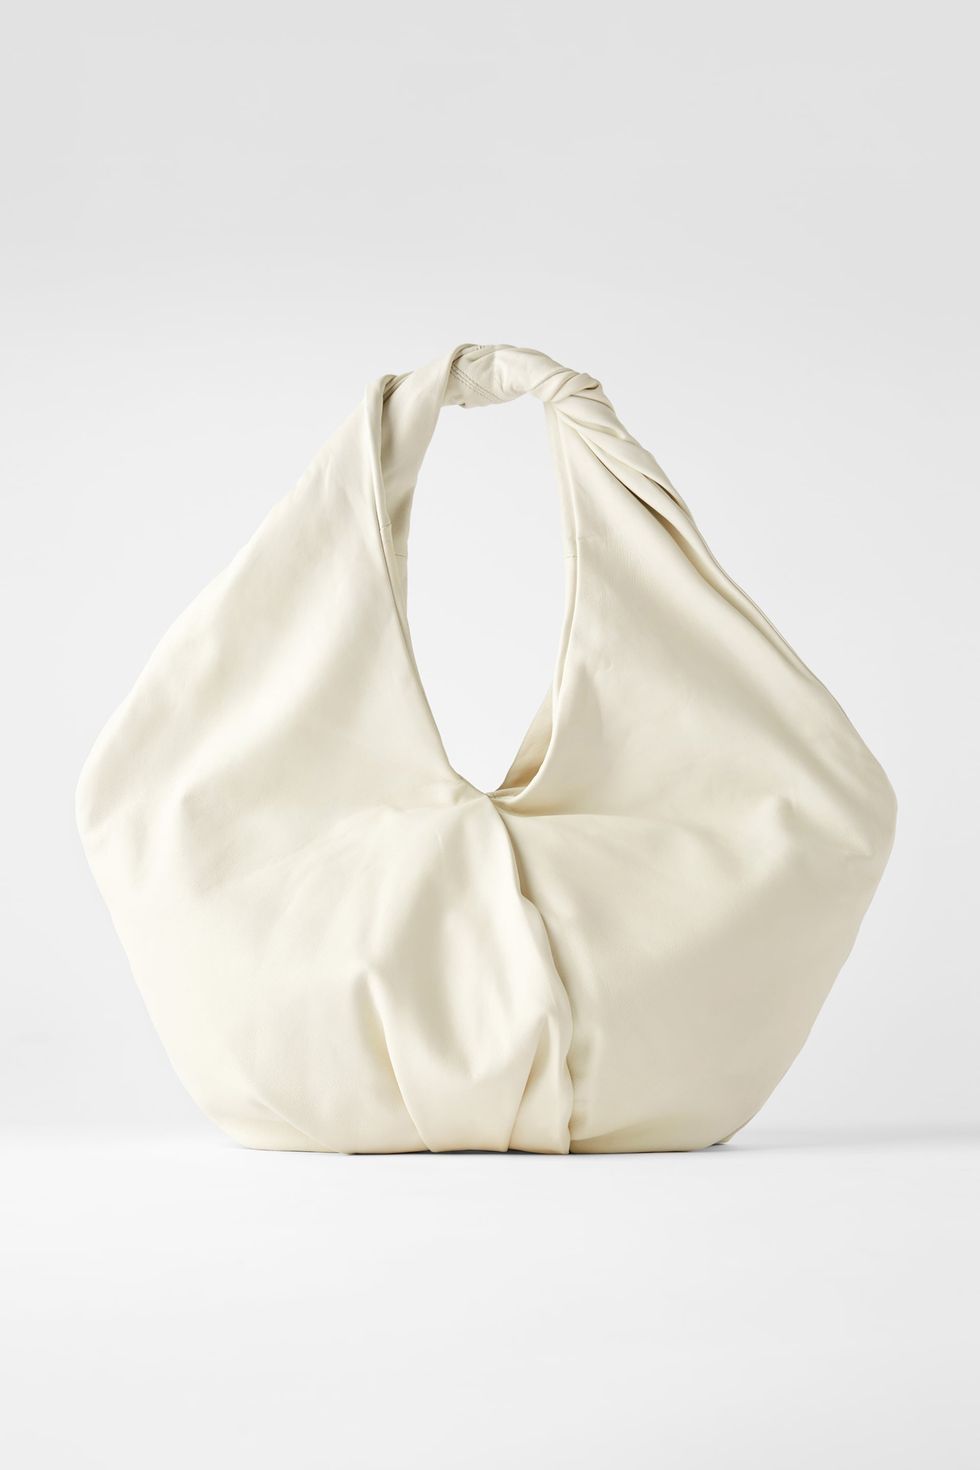 Bag, White, Handbag, Hobo bag, Shoulder bag, Fashion accessory, Beige, 